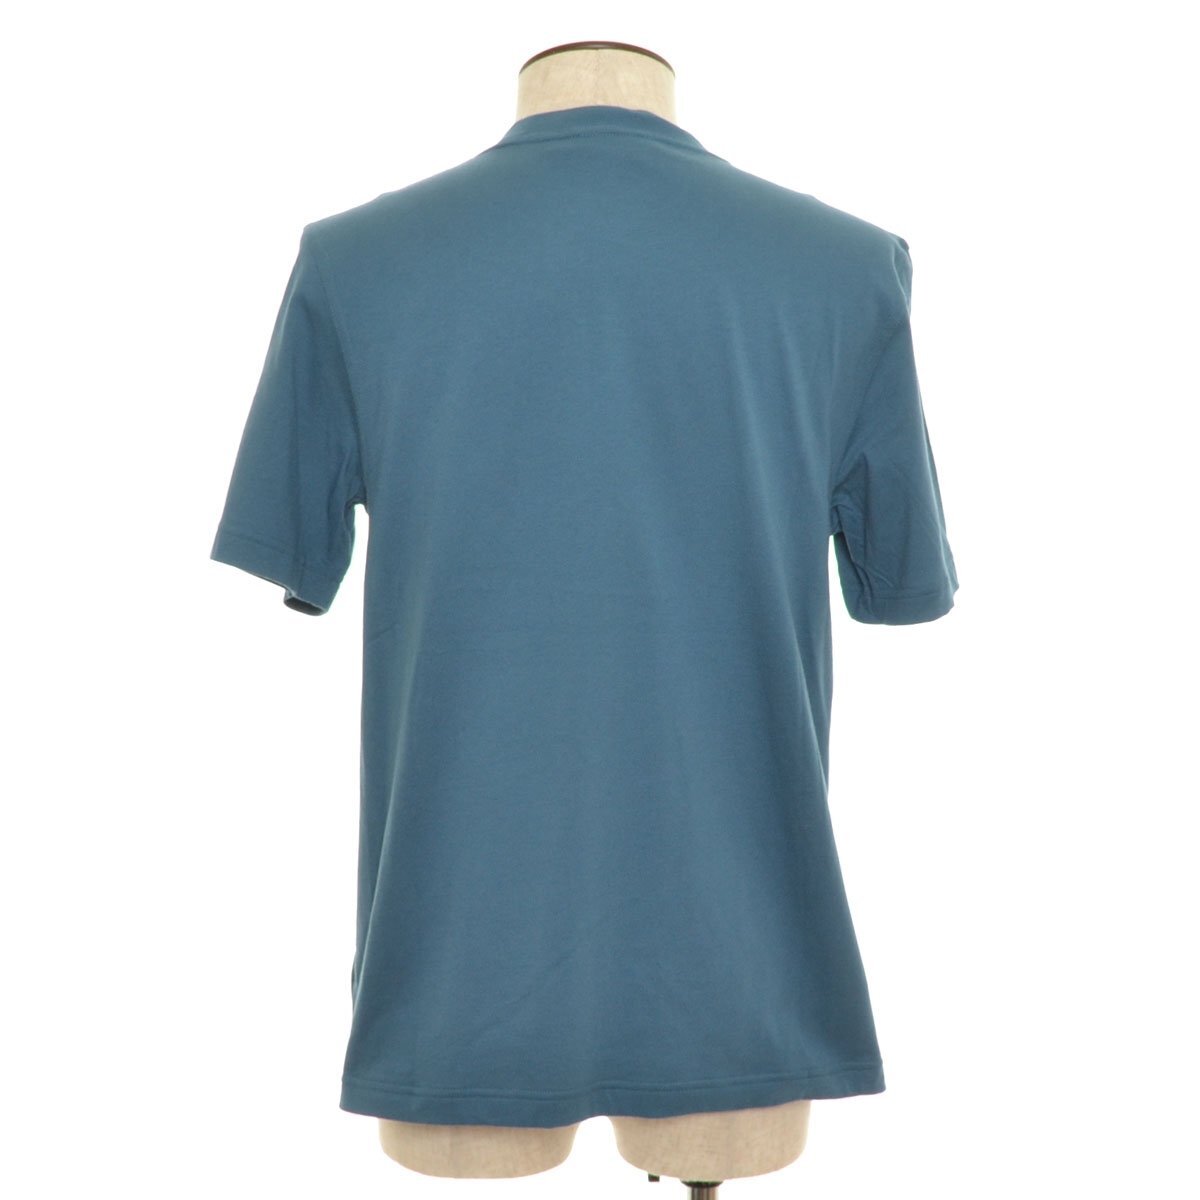 ◆314760 adidas Originals アディダス オリジナルス ボックスプリントTシャツ ショートスリーブ 半袖 サイズM メンズ ブルー_画像2